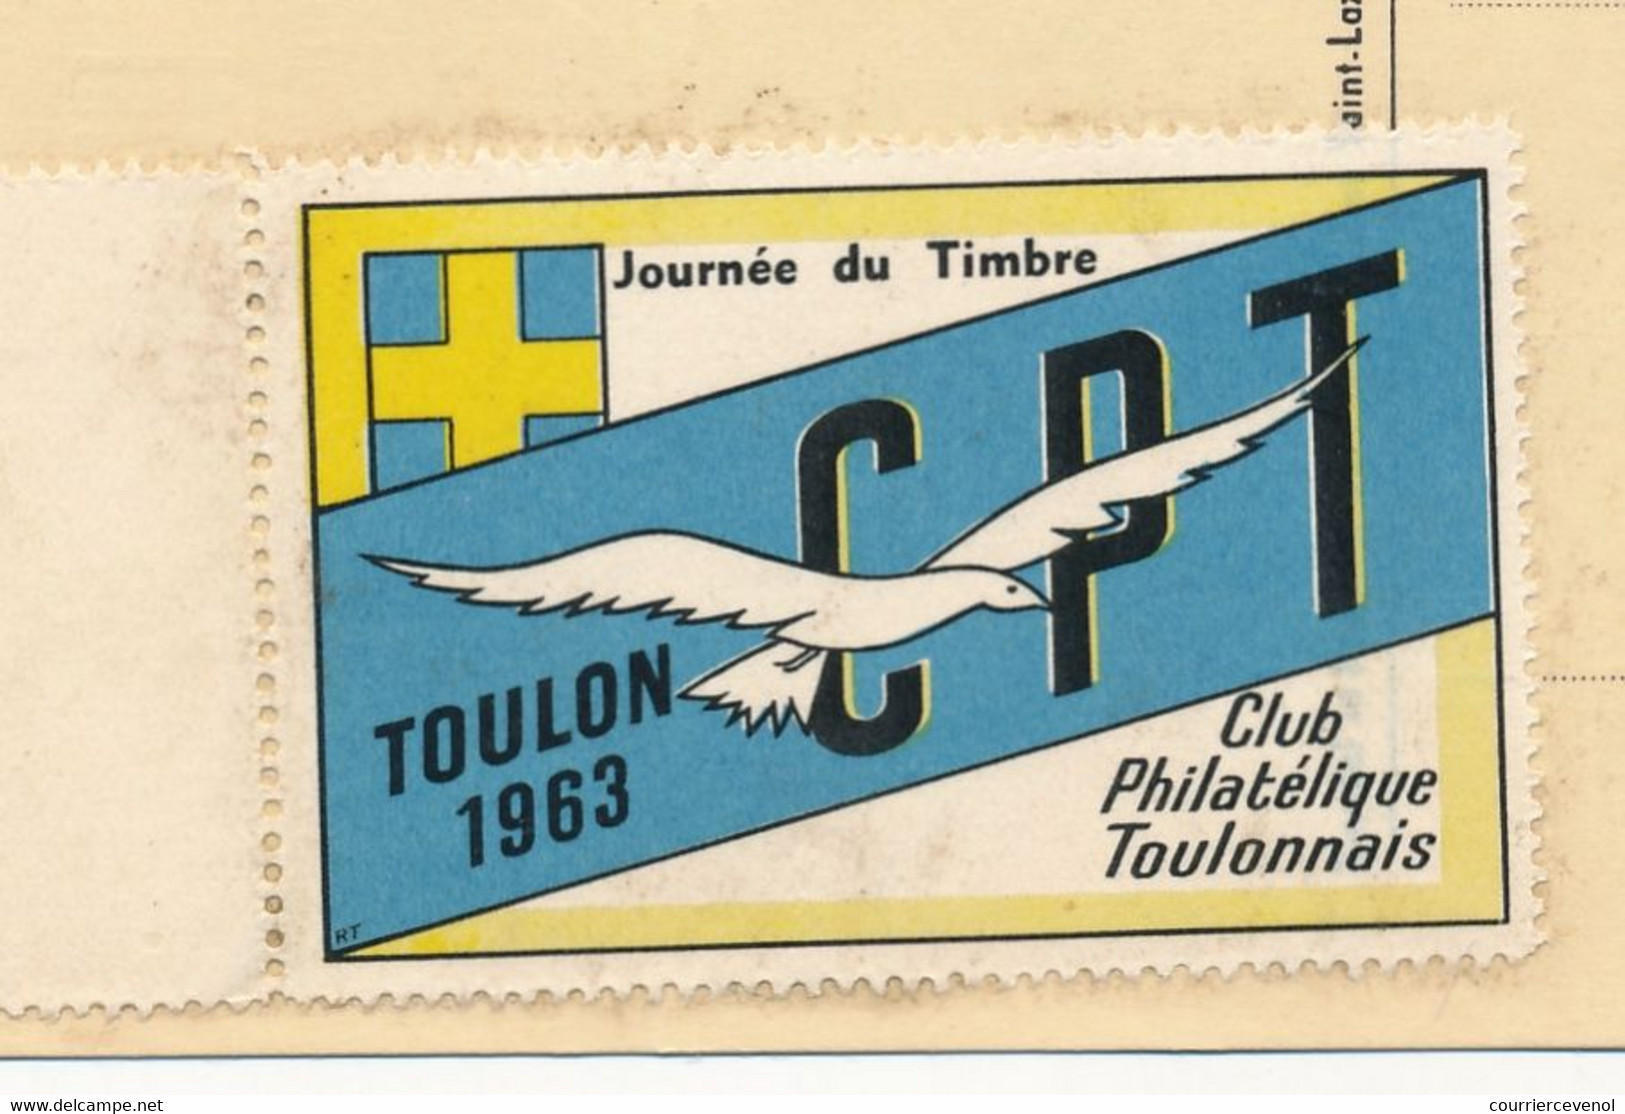 FRANCE - Carte Locale - Journée Du Timbre 1963 - Poste Gallo-Romaine - TOULON-SUR-MER - 16/3/1963 - Vignette Au Dos - Día Del Sello